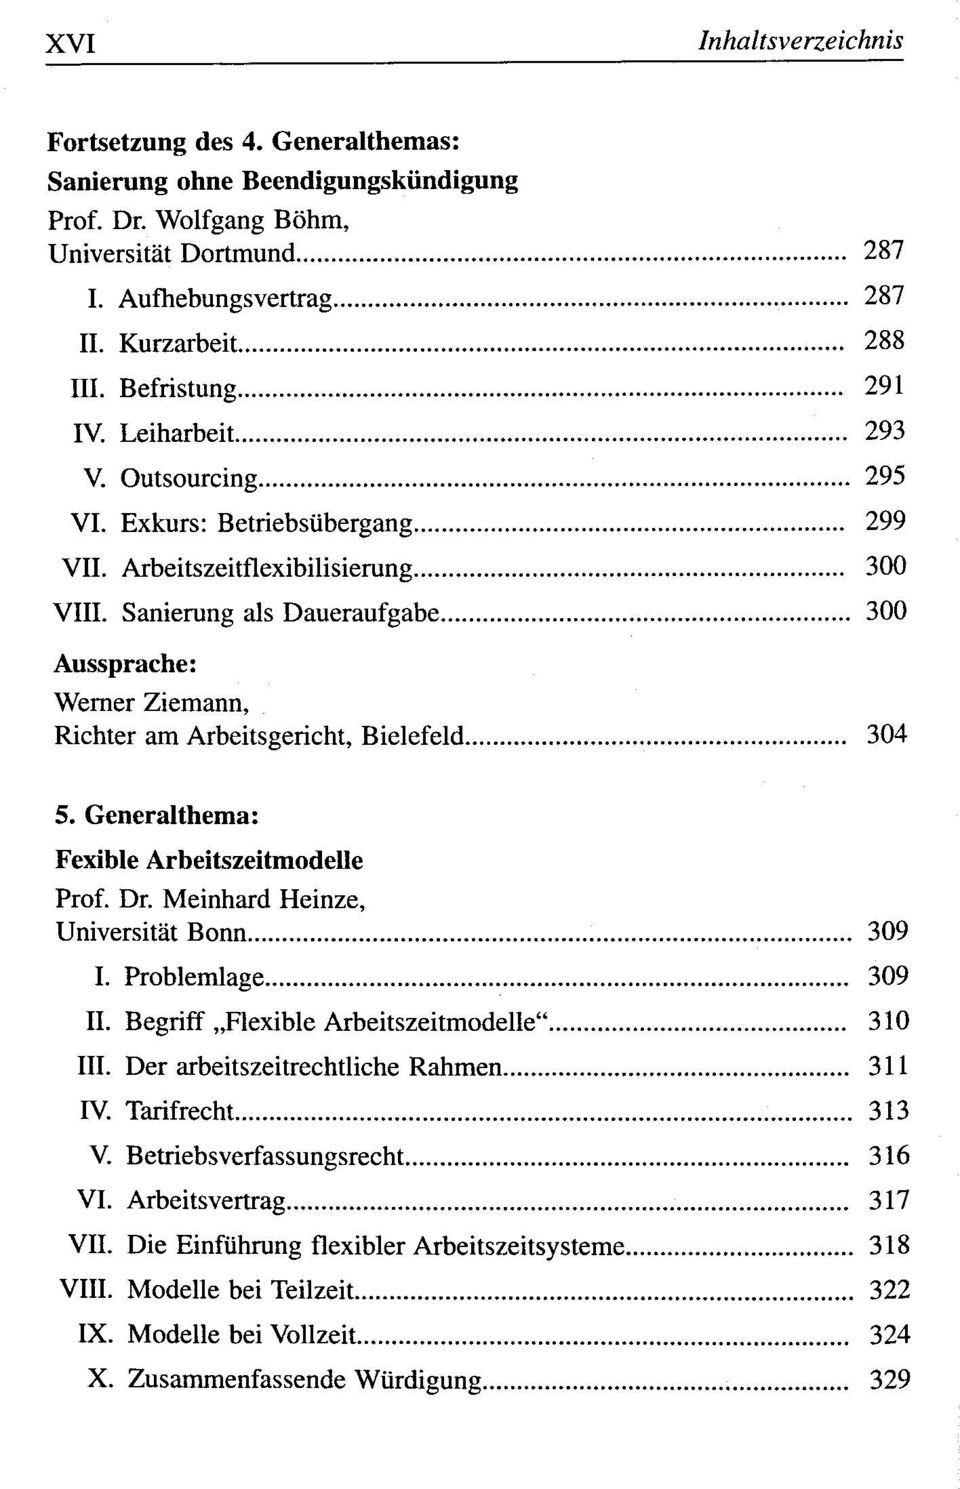 Generalthema: Fexible Arbeitszeitmodelle Prof. Dr. Meinhard Heinze, Universität Bonn 309 I. Problemlage 309 II. Begriff Flexible Arbeitszeitmodelle" 310 III.